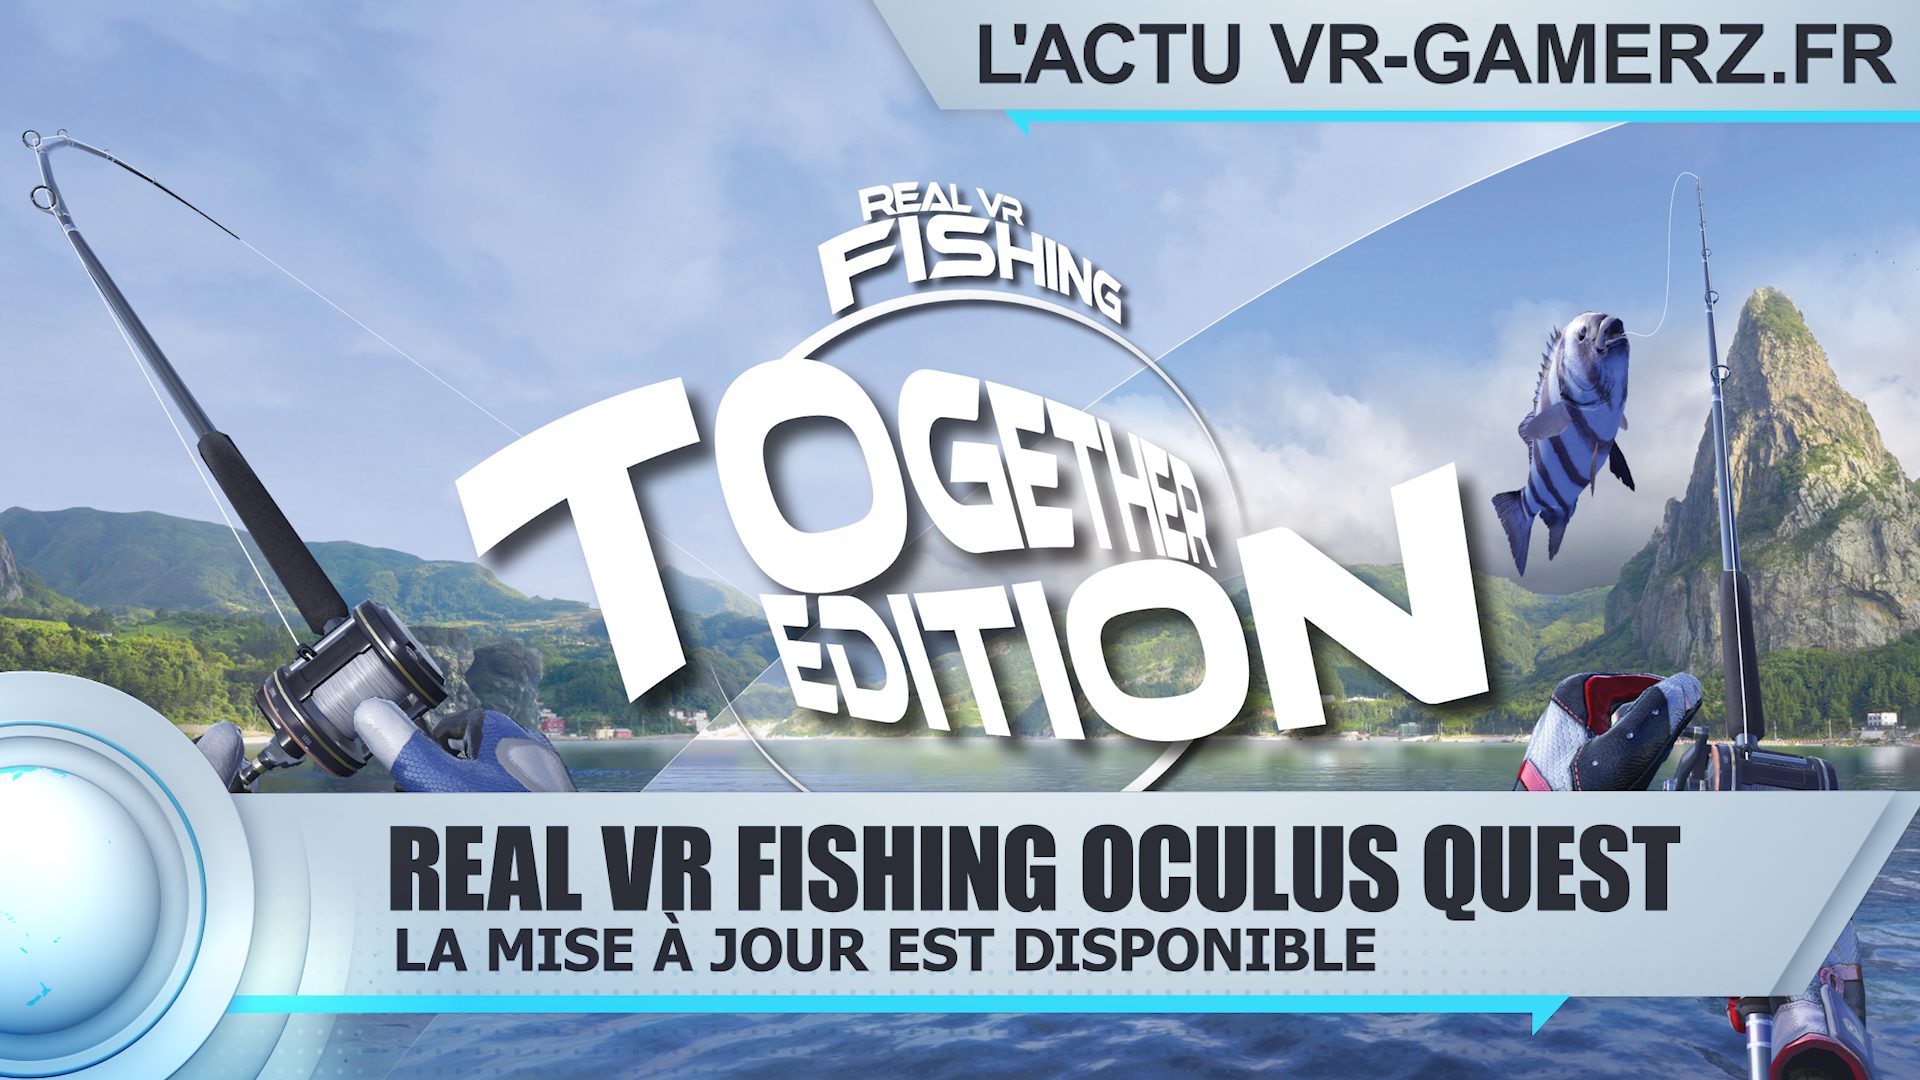 Real VR Fishing Oculus quest : La mise à jour Together Edition est disponible